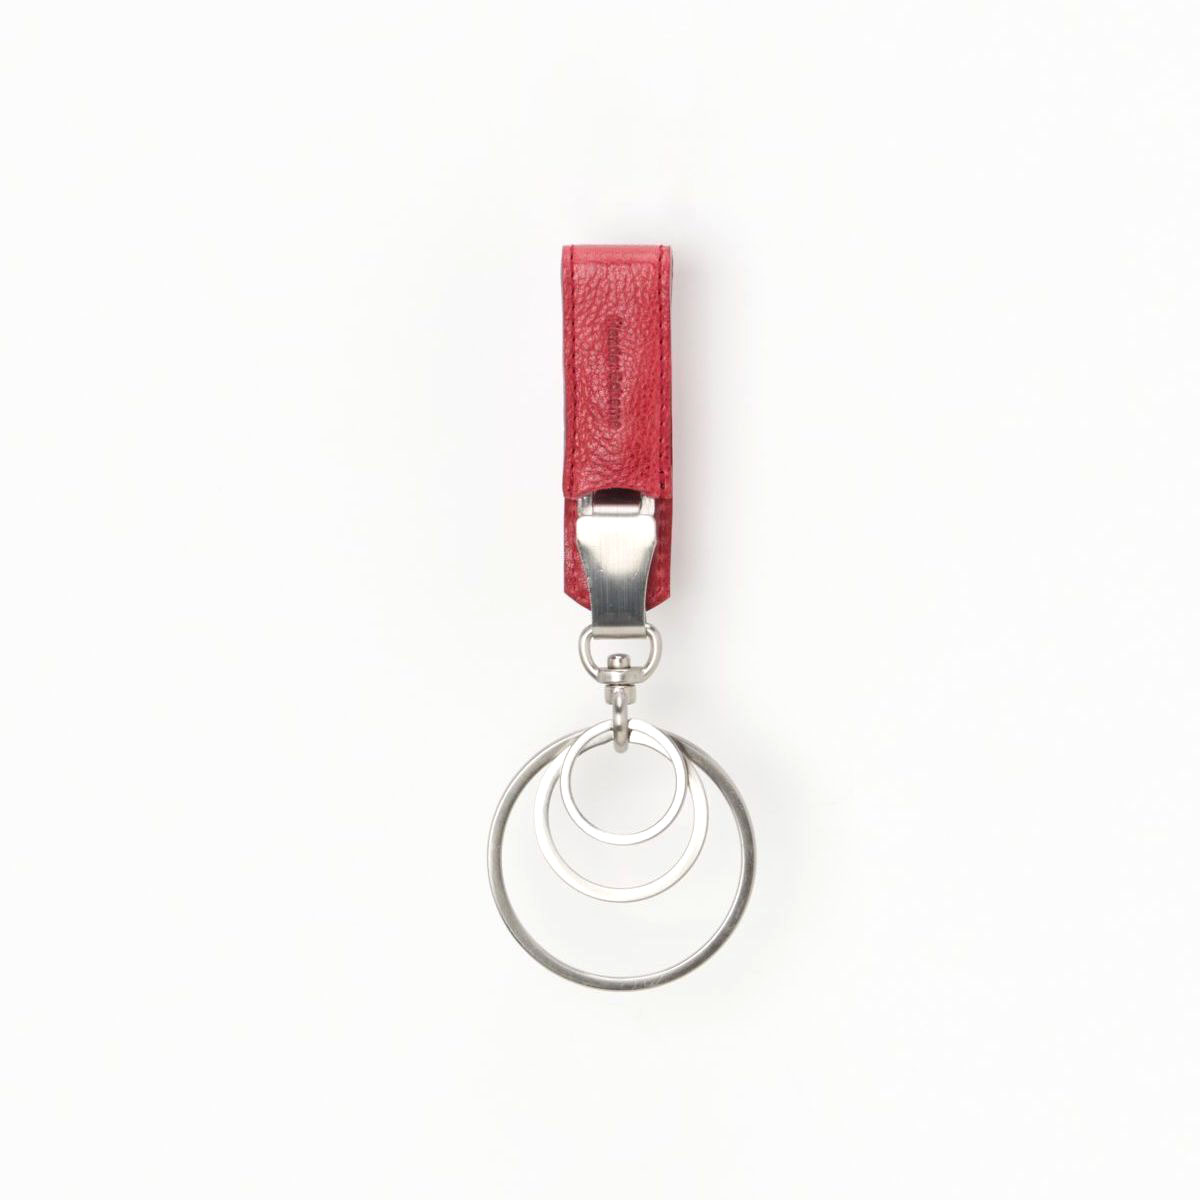 Hender Scheme / key clip (Red)